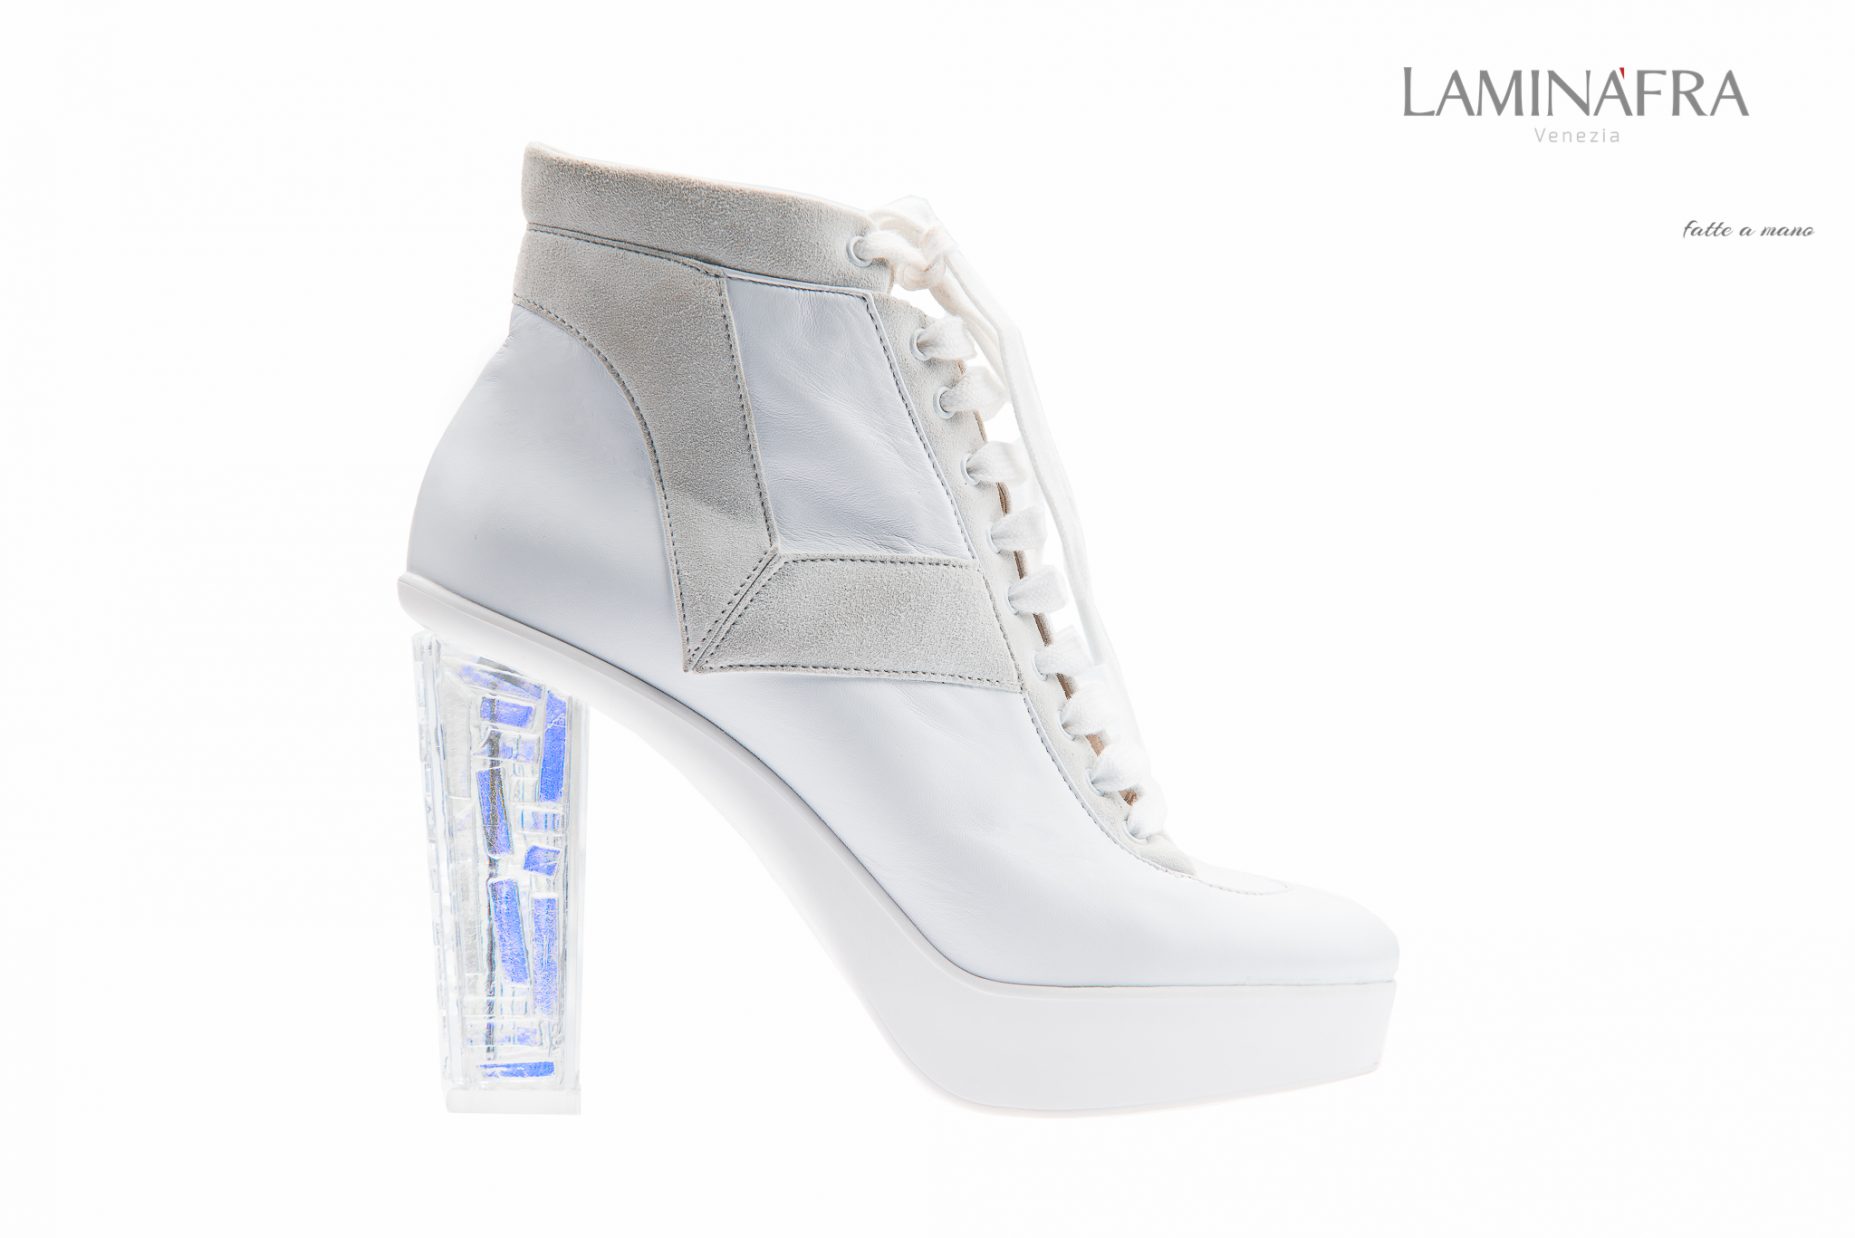 Laminafra Luxury Shoes - Still life e fashion catalogue for www.laminafra.it